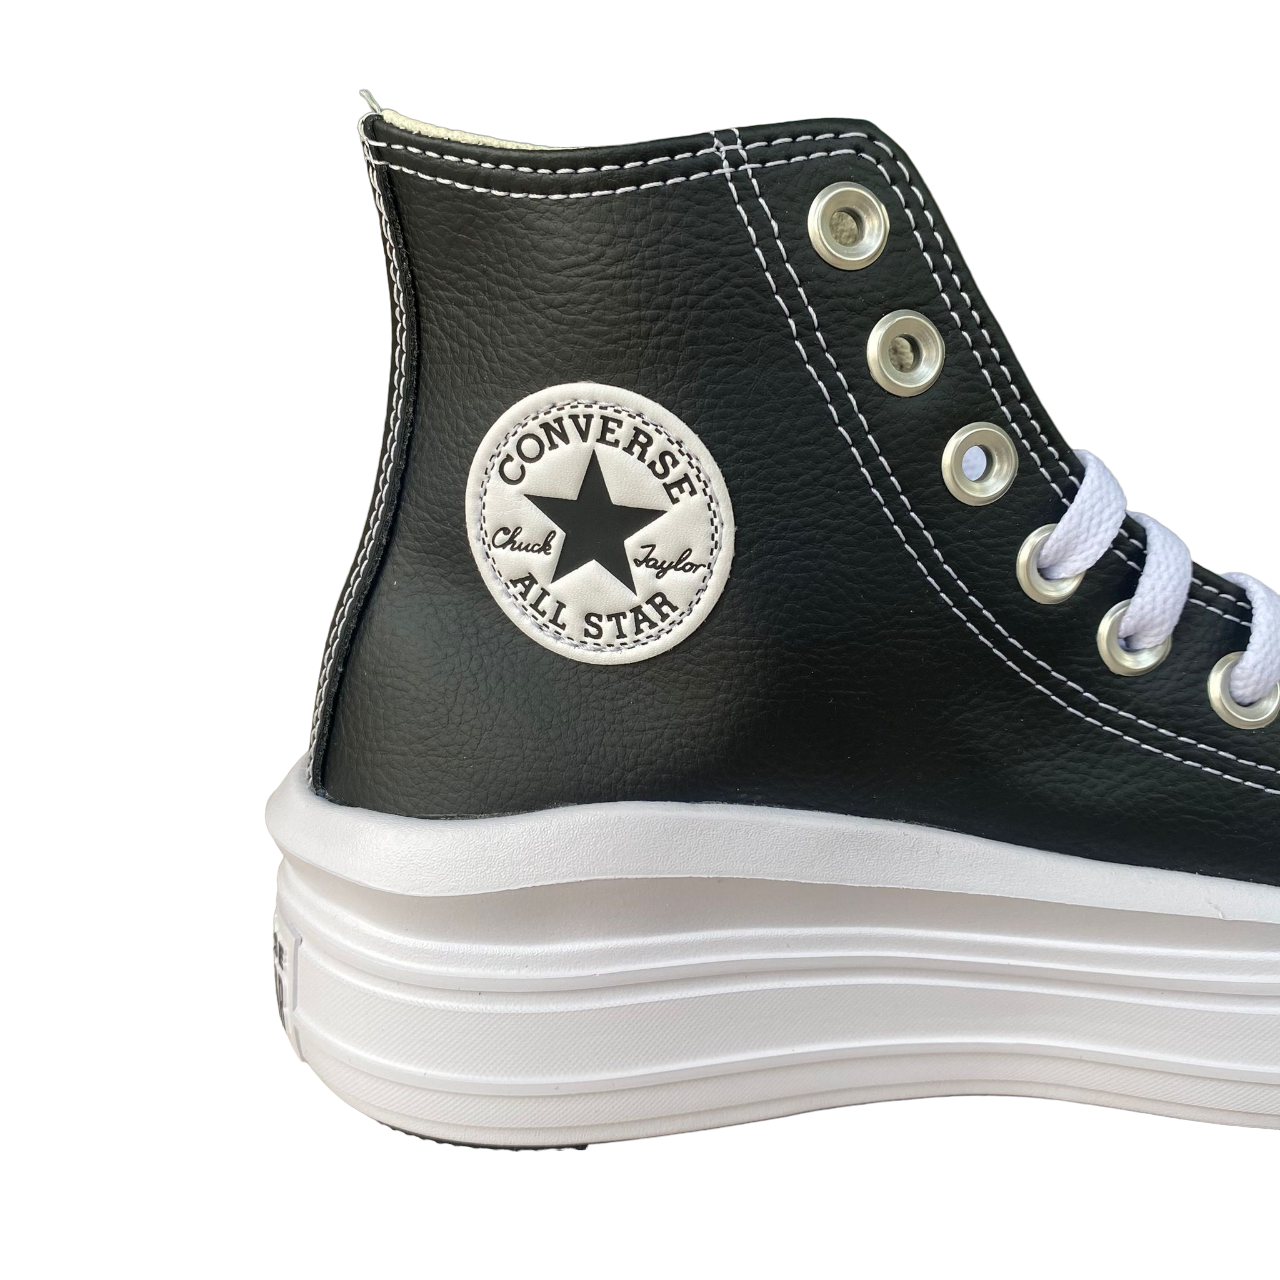 Converse scarpa sneakers da donna con zeppa in pelle Chuck Taylor All Star Move A04294C nero-bianco